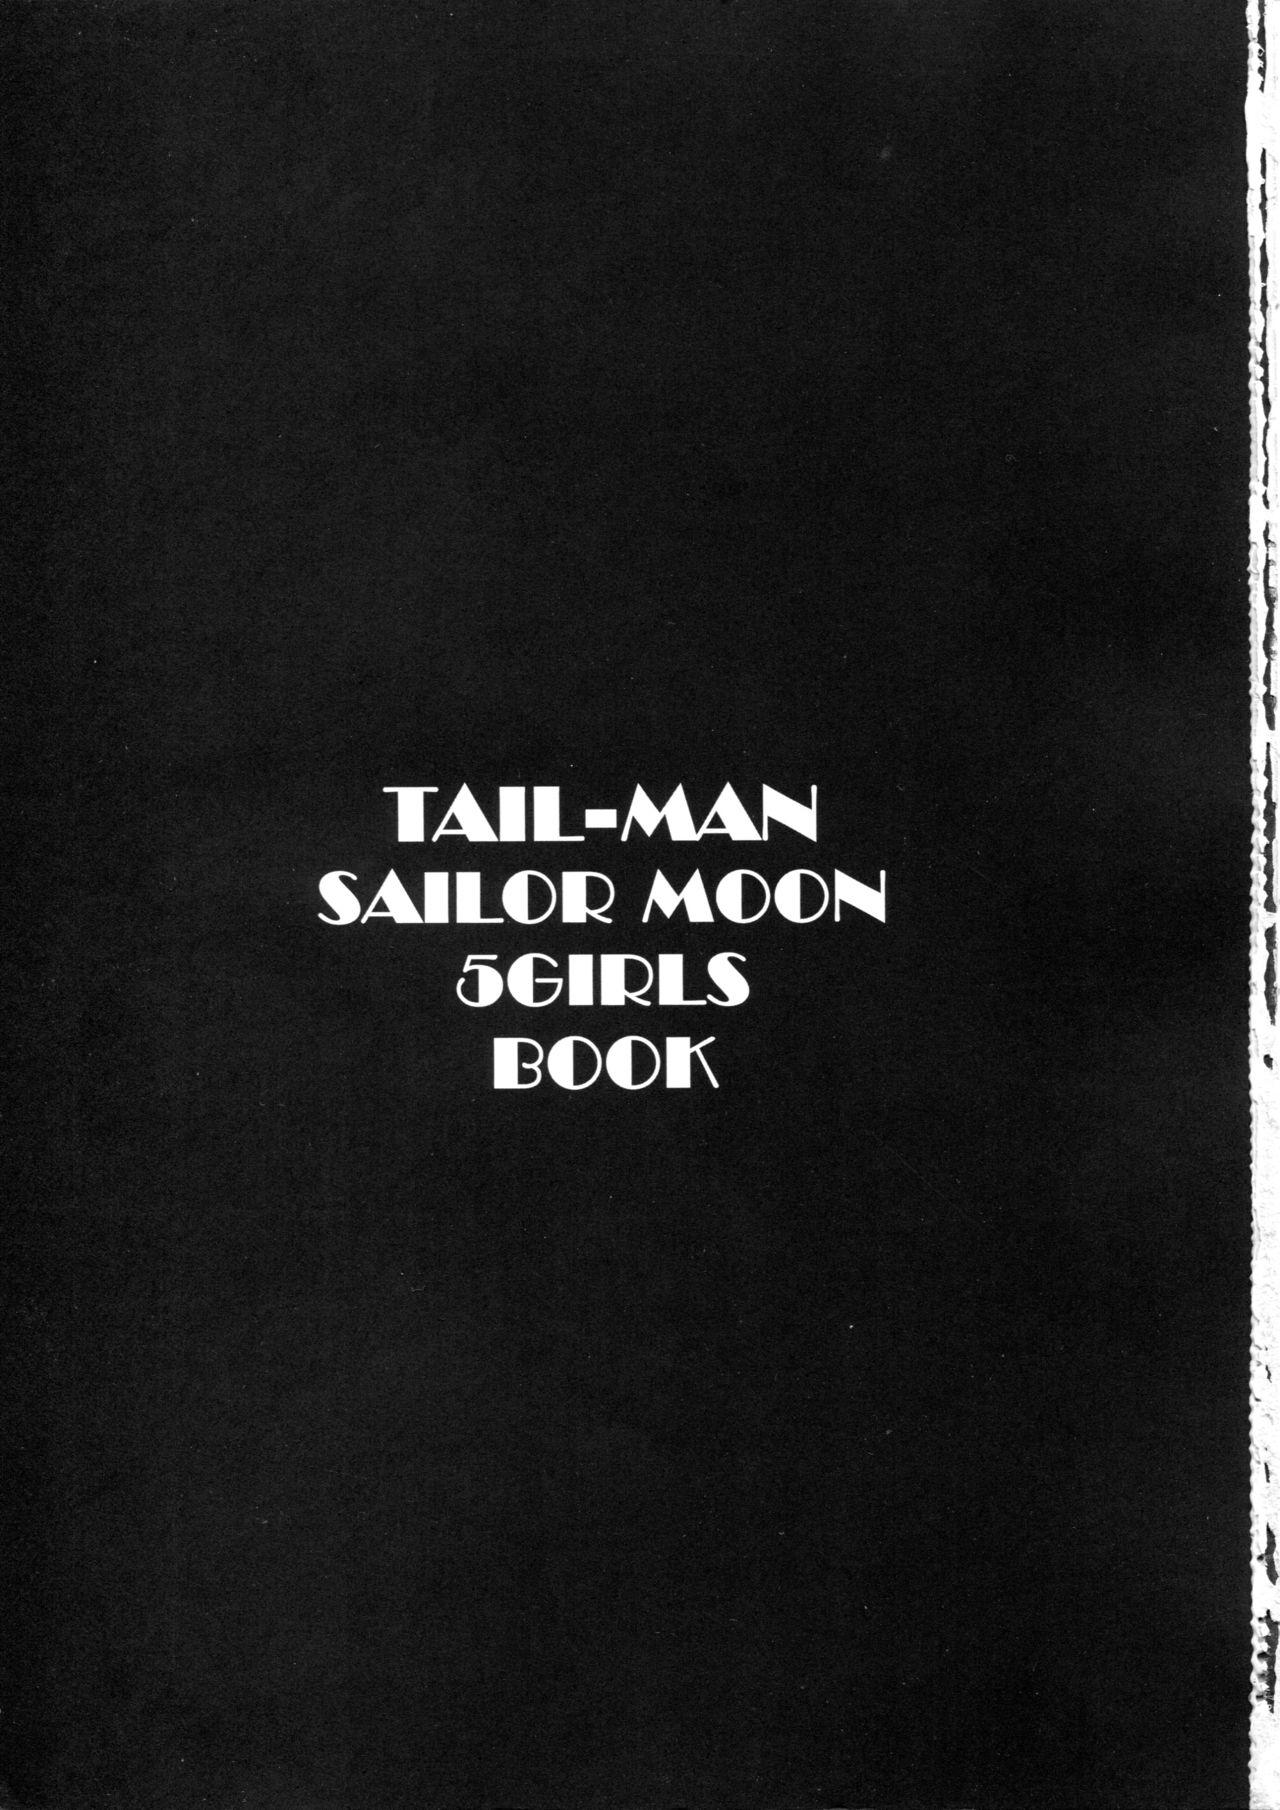 TAIL-MAN SAILORMOON 5GIRLS BOOK 1